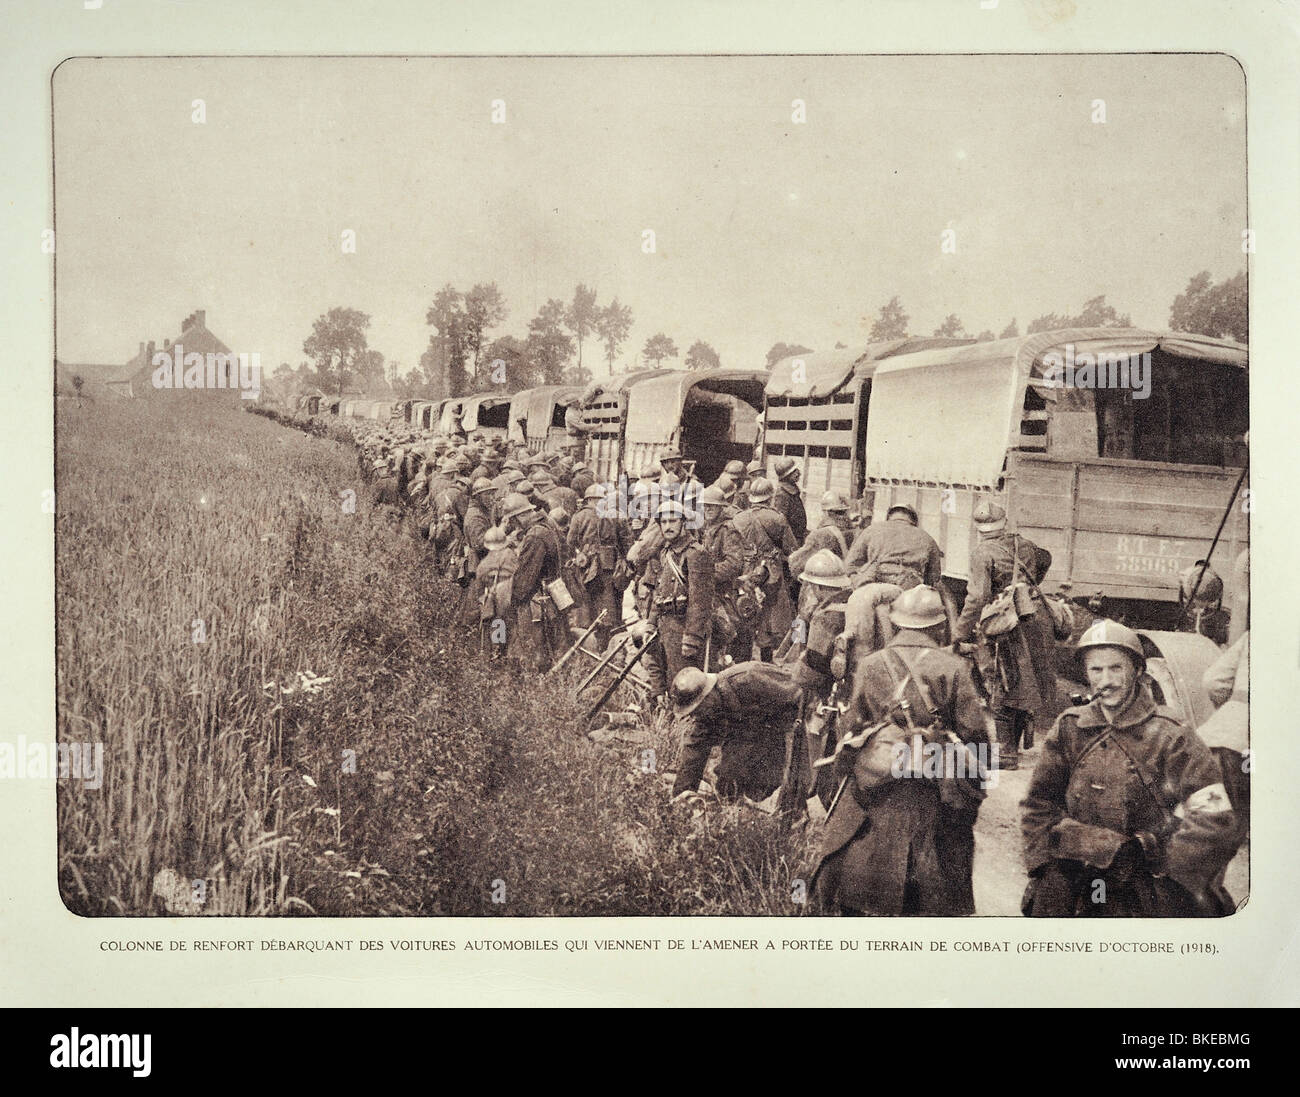 Les camions et les soldats de la PREMIÈRE GUERRE MONDIALE en direction de convoi de renfort de bataille en Flandre occidentale pendant la Première Guerre mondiale, la Belgique Banque D'Images